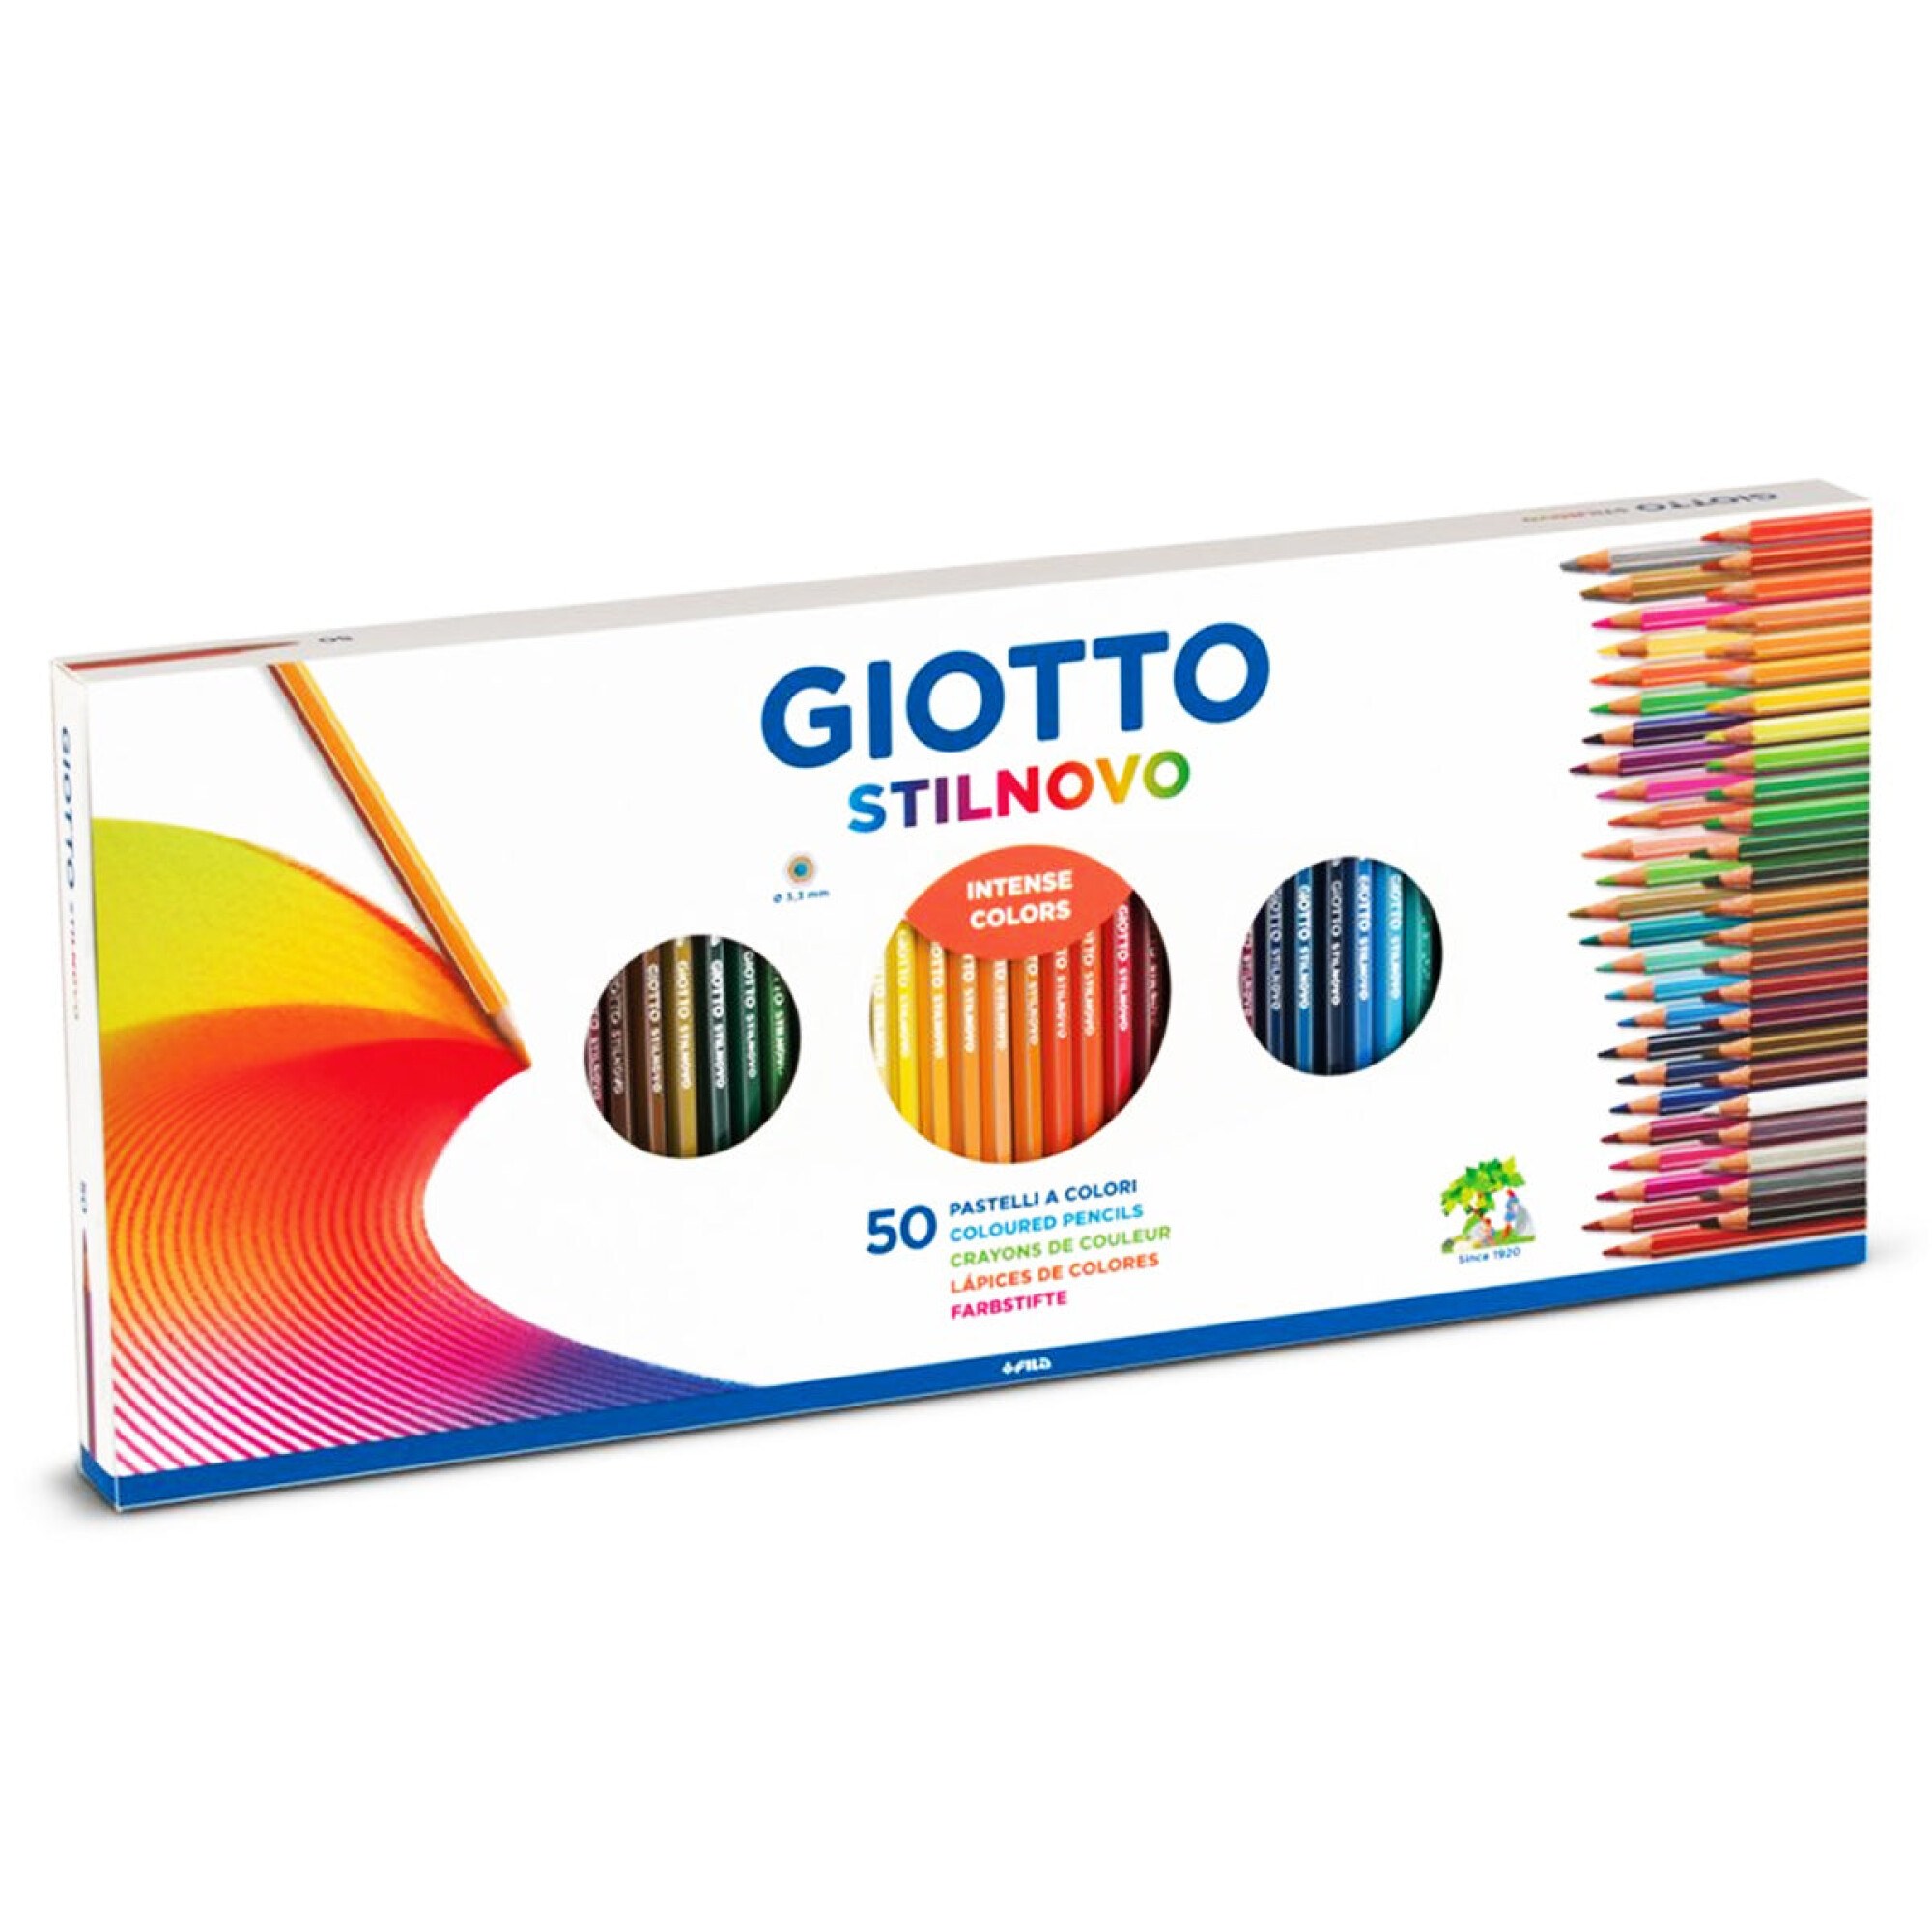 Artística Portento - Lapices de Colores Profesionales Giotto StilNovo  Aquarell en Lata. Incluye: Lápices de colores Giotto Stilnovo Aquarell Con  un largo de 18 cm. Barnizado en el mismo color de la